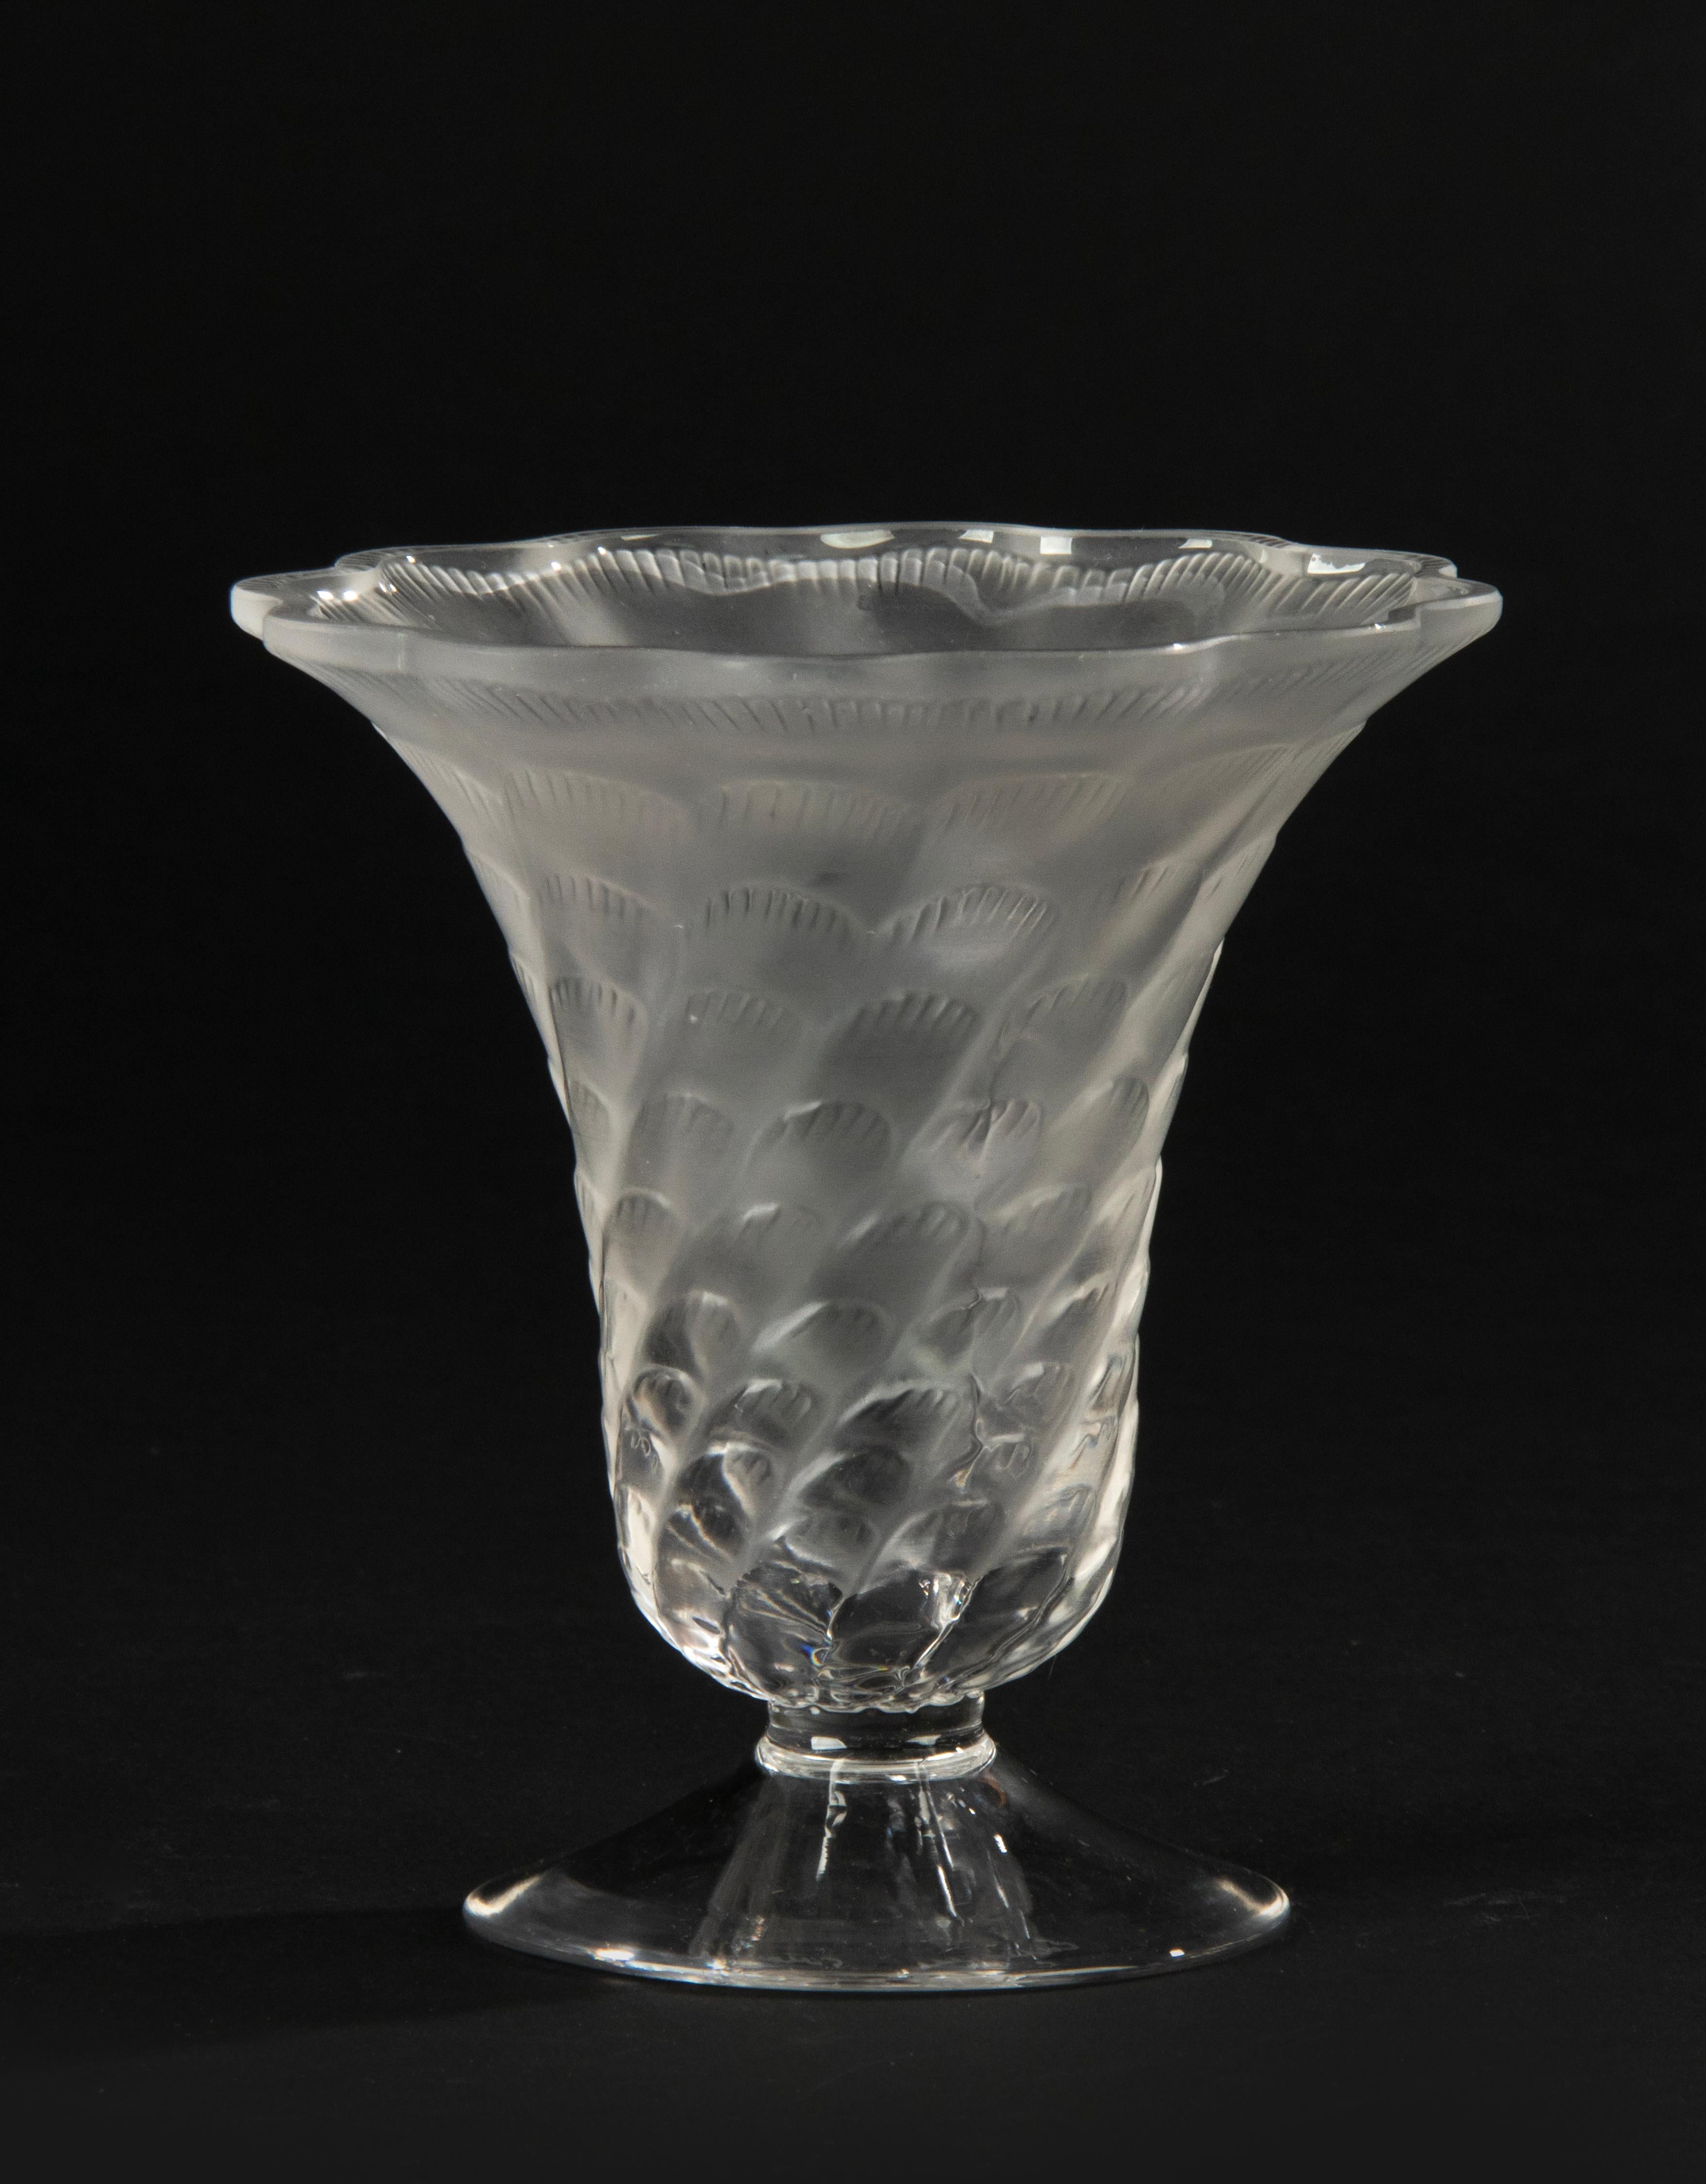 Un magnifique petit vase, réalisé par le fabricant français Lalique. Beaux décors en relief, cristal satiné. Marqué sur le fond.
Le vase est en très bon état.
Expédition gratuite